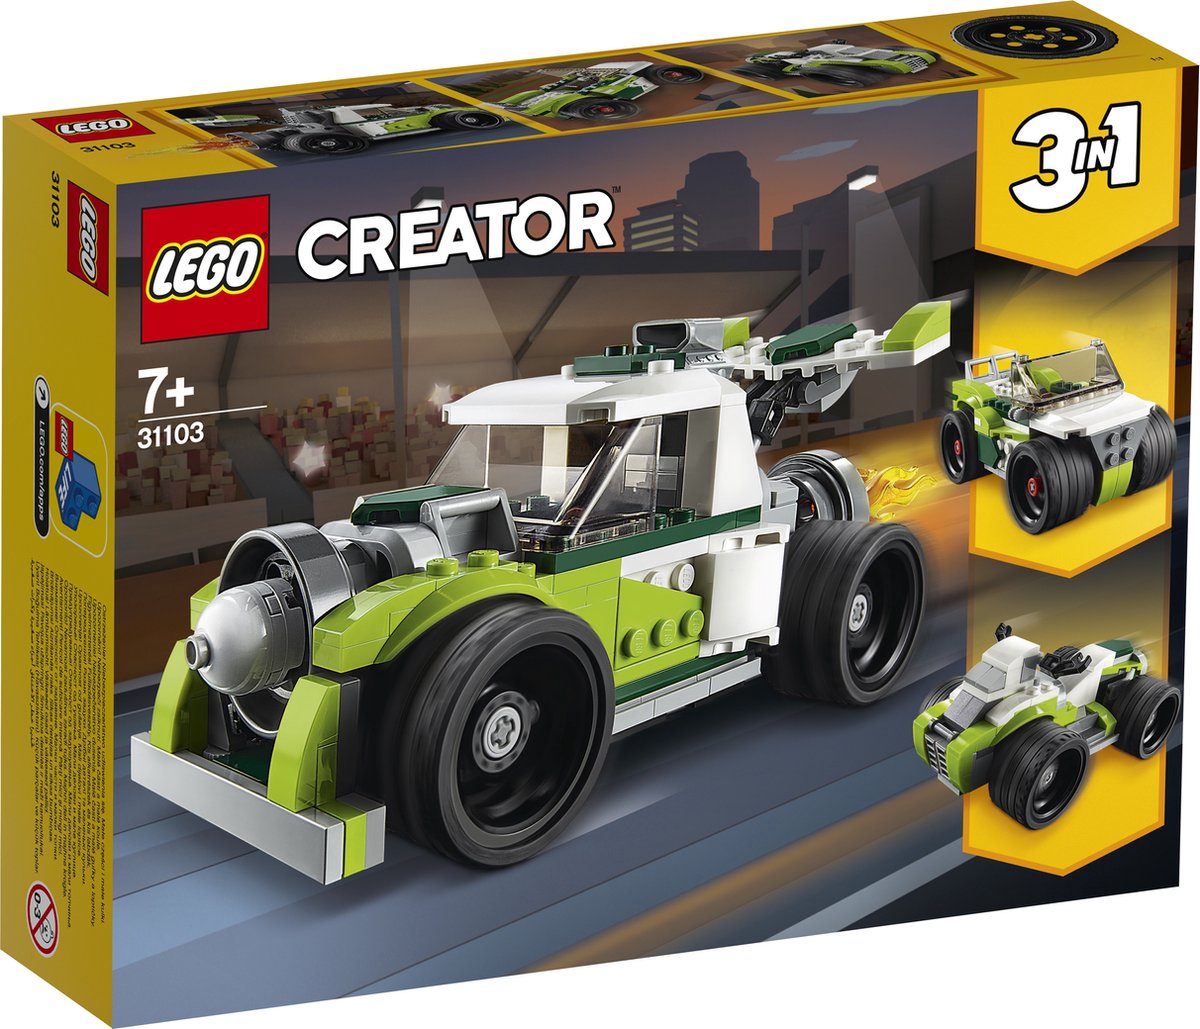 LEGO Creator 3-en-1 La voiture de course de rue 31127 Ensemble de